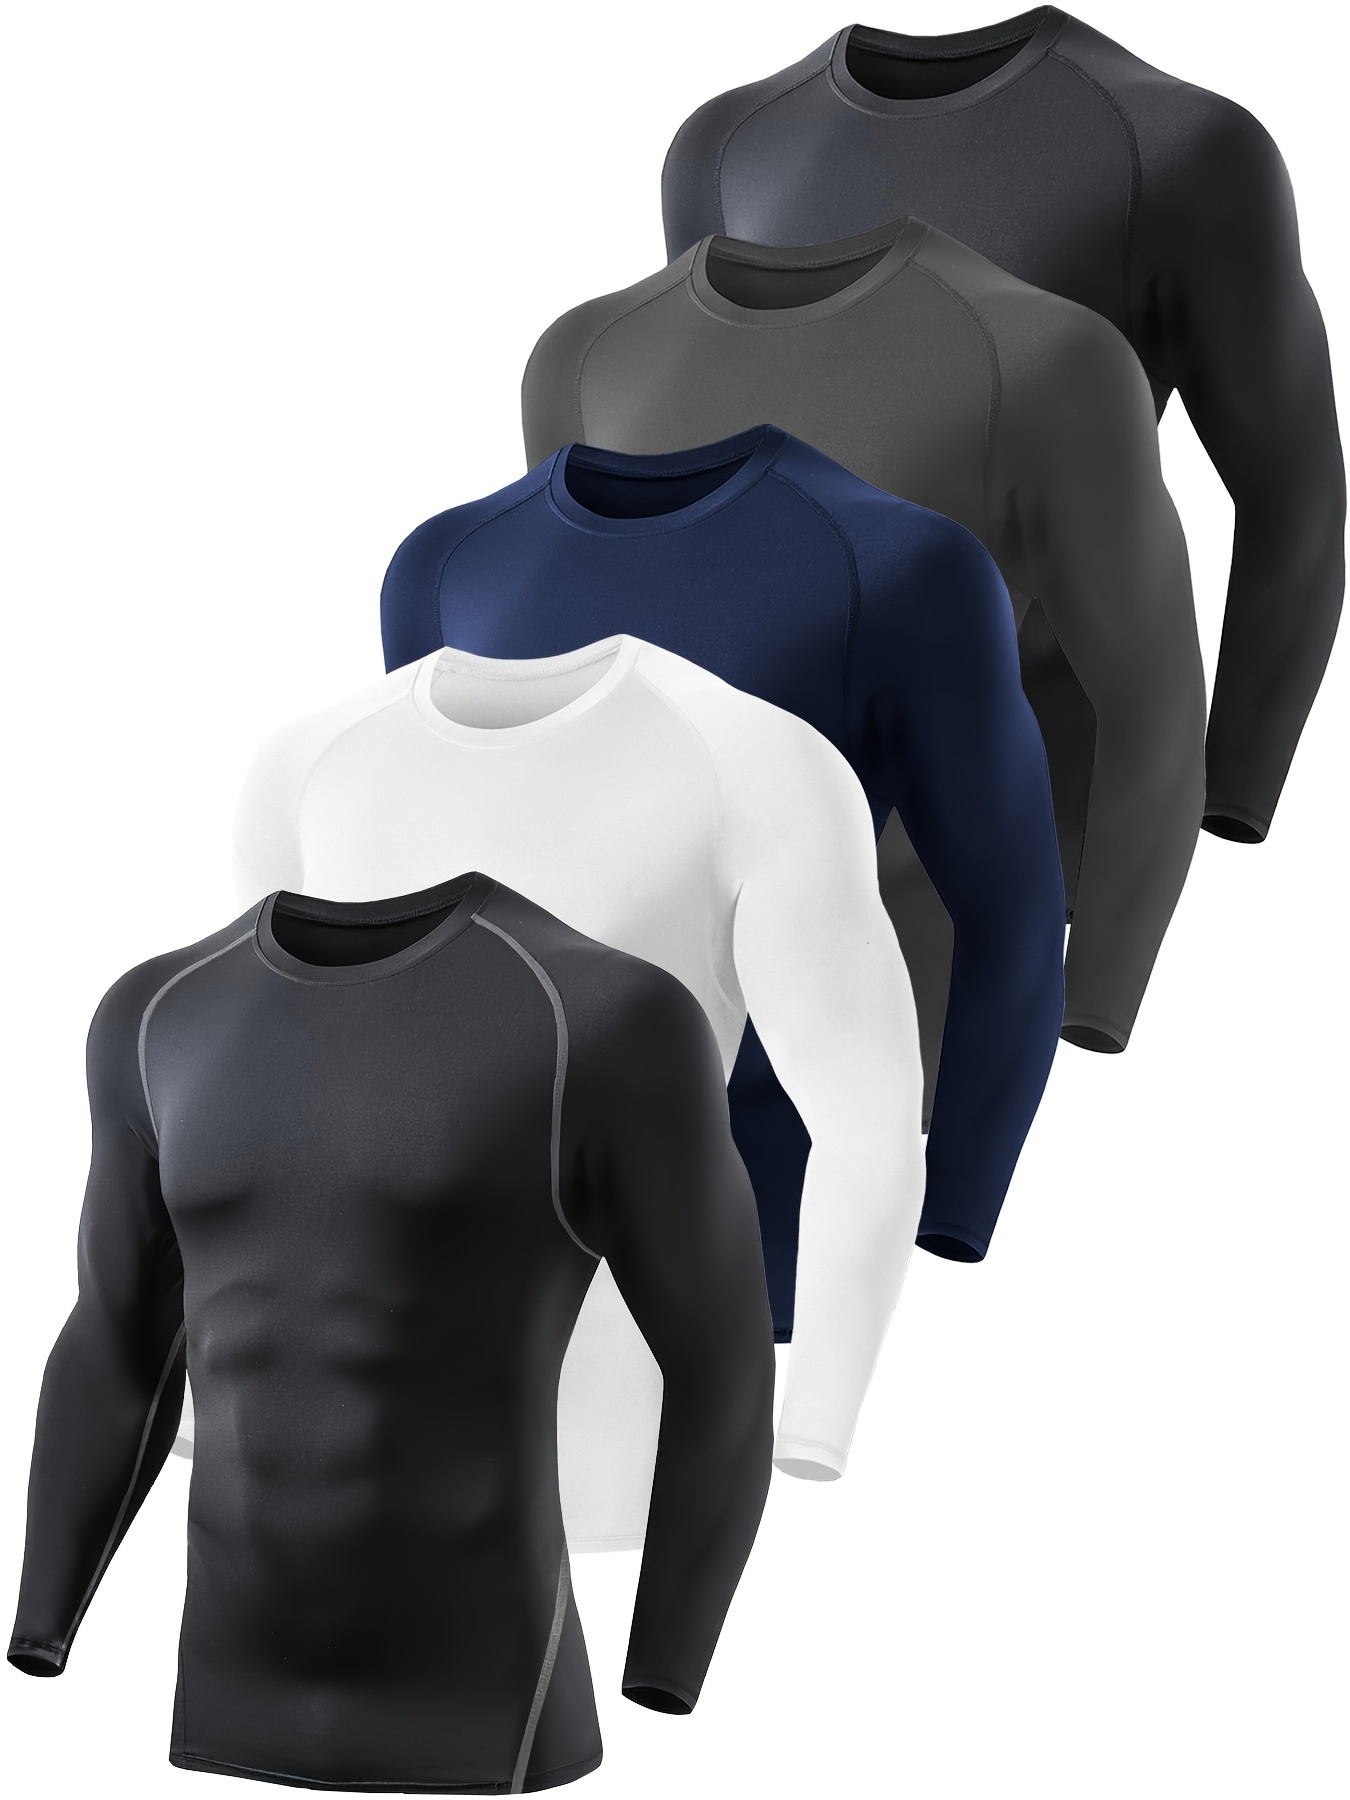 Paquete de 5 o 4 camisetas de compresión para hombre, manga larga,  atléticas, para clima frío, camiseta interior para entrenamiento